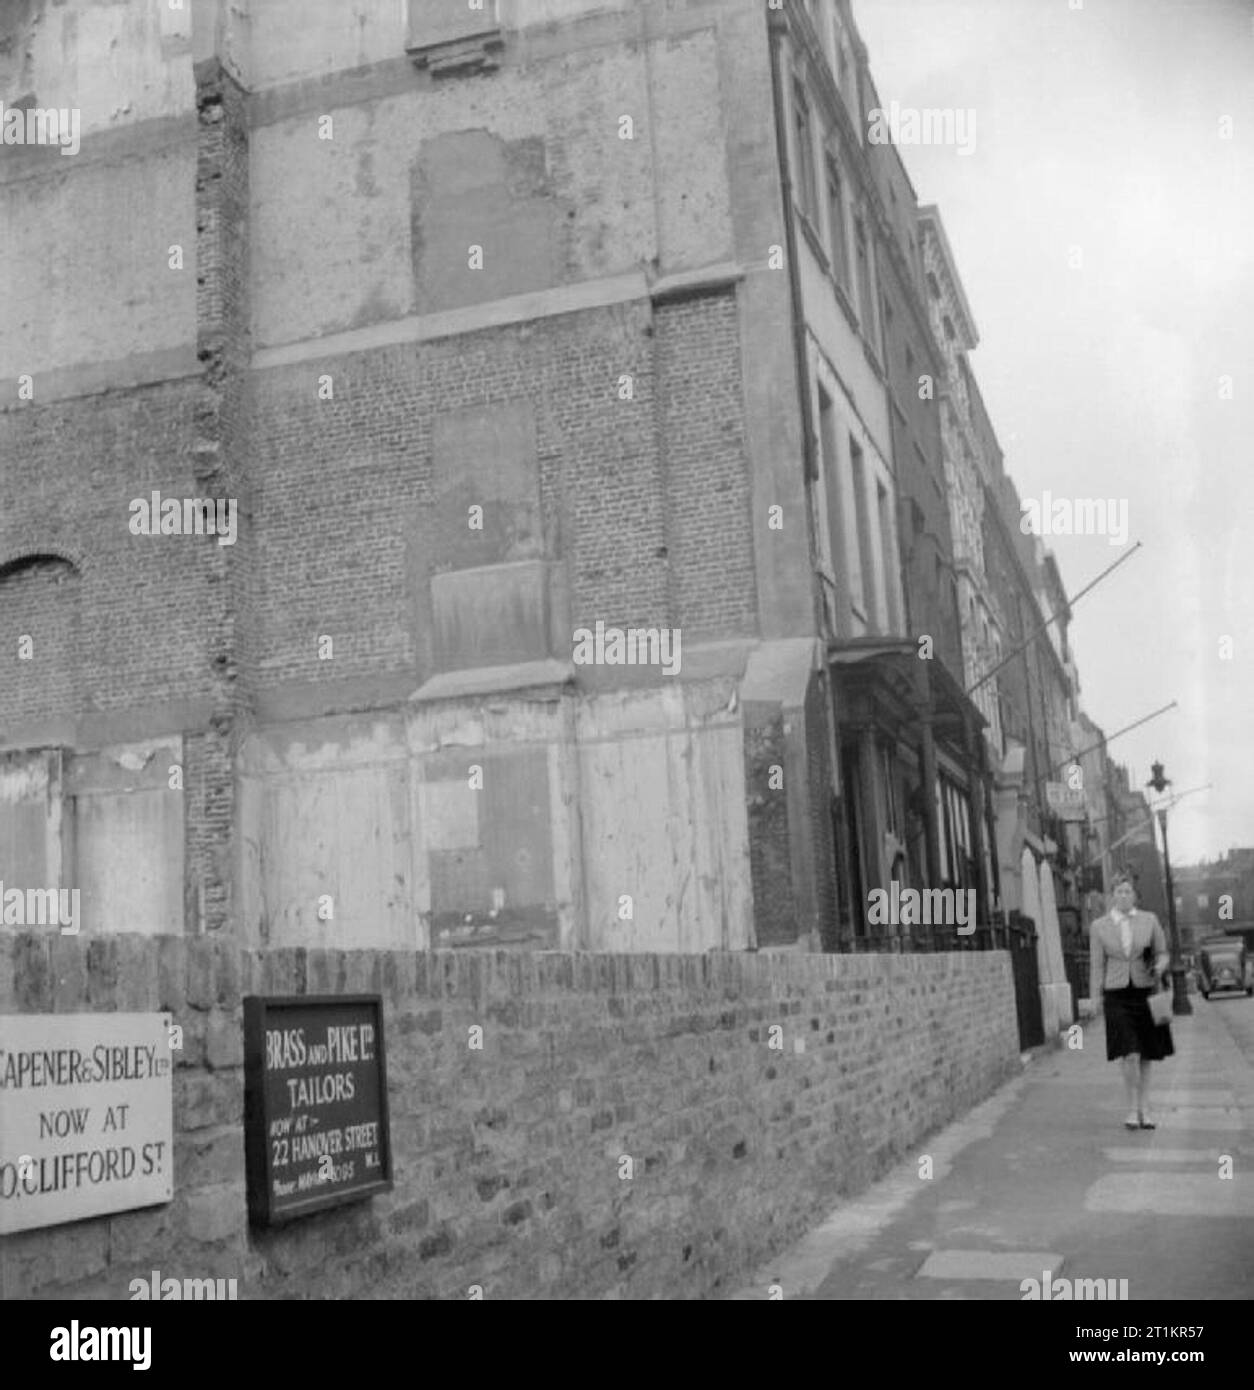 Savile Row- Sartoria presso Henry Poole e Co. di Londra, Inghilterra, Regno Unito, 1944 Una donna cammina giù Savile Row, passato lo spazio lasciato case dove una volta sorgeva, prima che fossero distrutte in un raid aereo. Il sito è ora sede di un'emergenza serbatoio acqua, nascosto dietro la parete. Chiaramente visibili sono due schede consulenza ai clienti dei nuovi indirizzi di 'Capener e Sibley Ltd.", (ora alla nuova sede di Clifford Street), e 'l'ottone e il luccio Sarti Ltd. (ora a 22 Hanover Street). Foto Stock